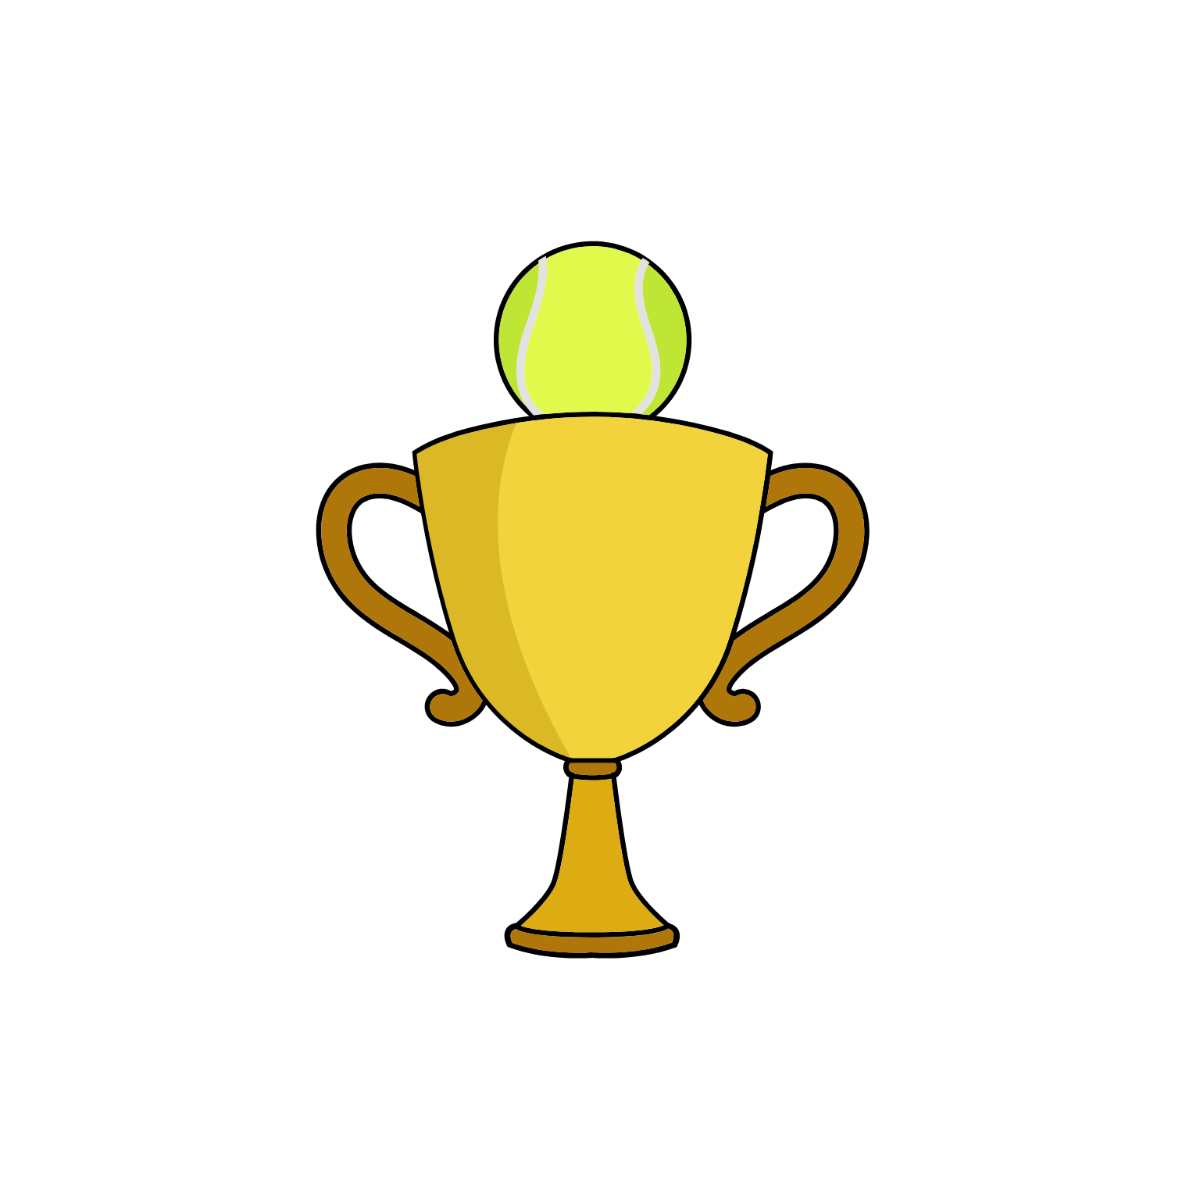 Tennis Trophy